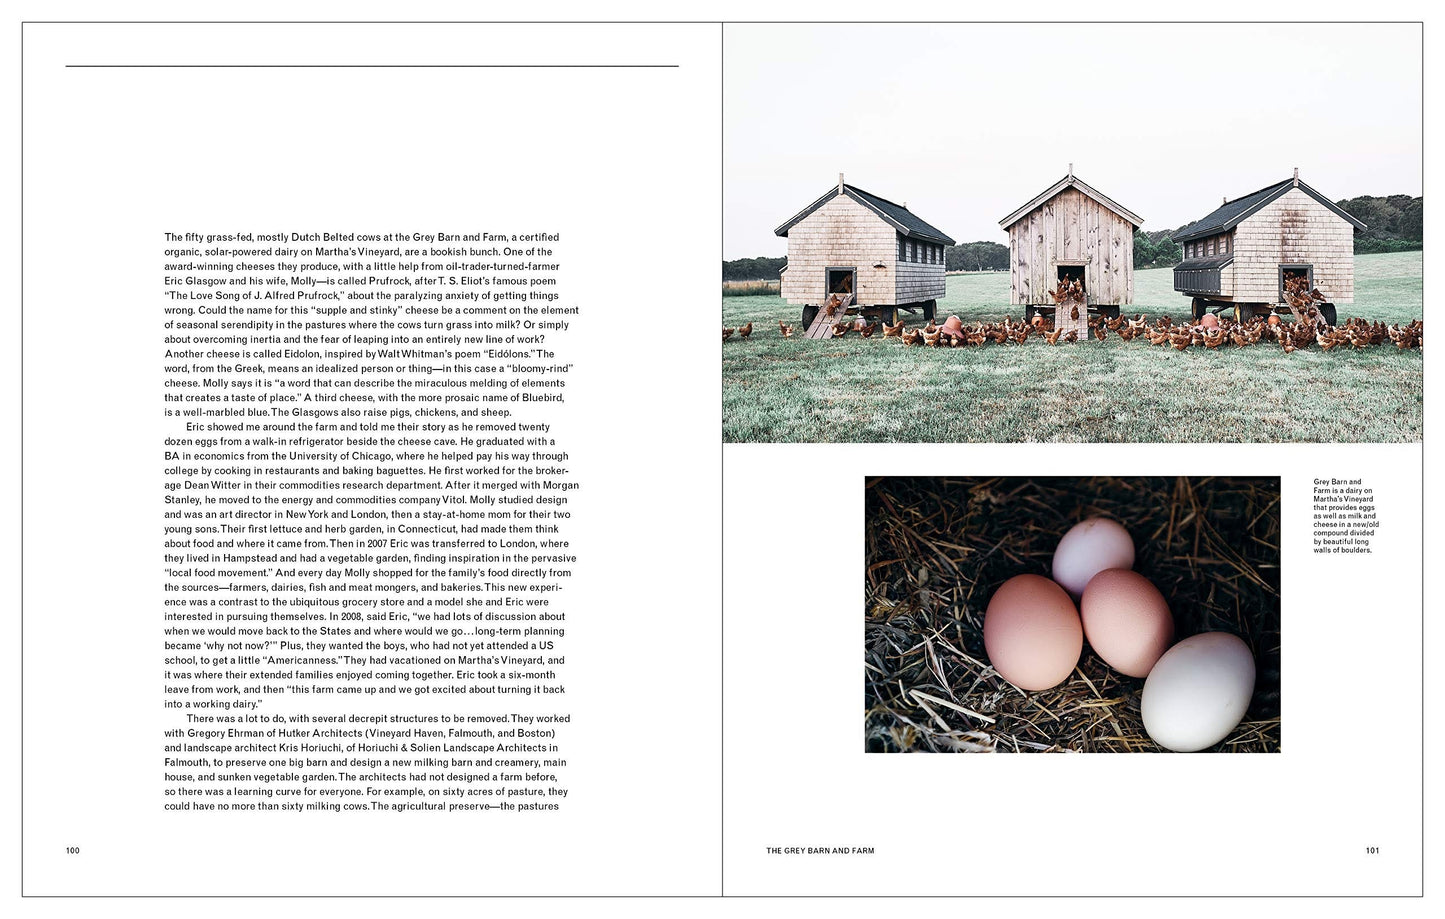 The New Farm: Contemporary Rural Architecture